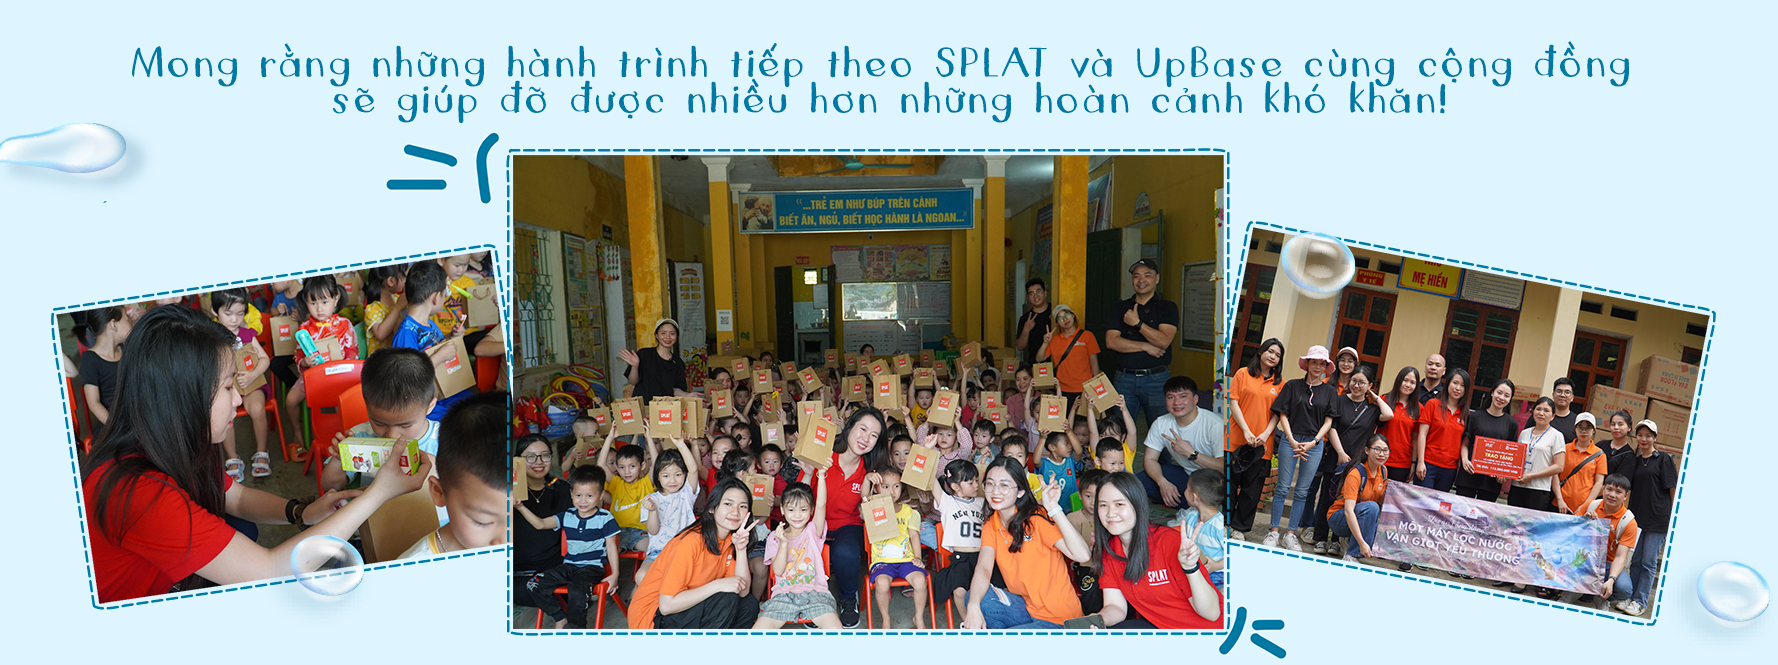 Dự án cộng đồng của Thương hiệu quốc tế tại Việt Nam đồng hành cùng UpBase.vn